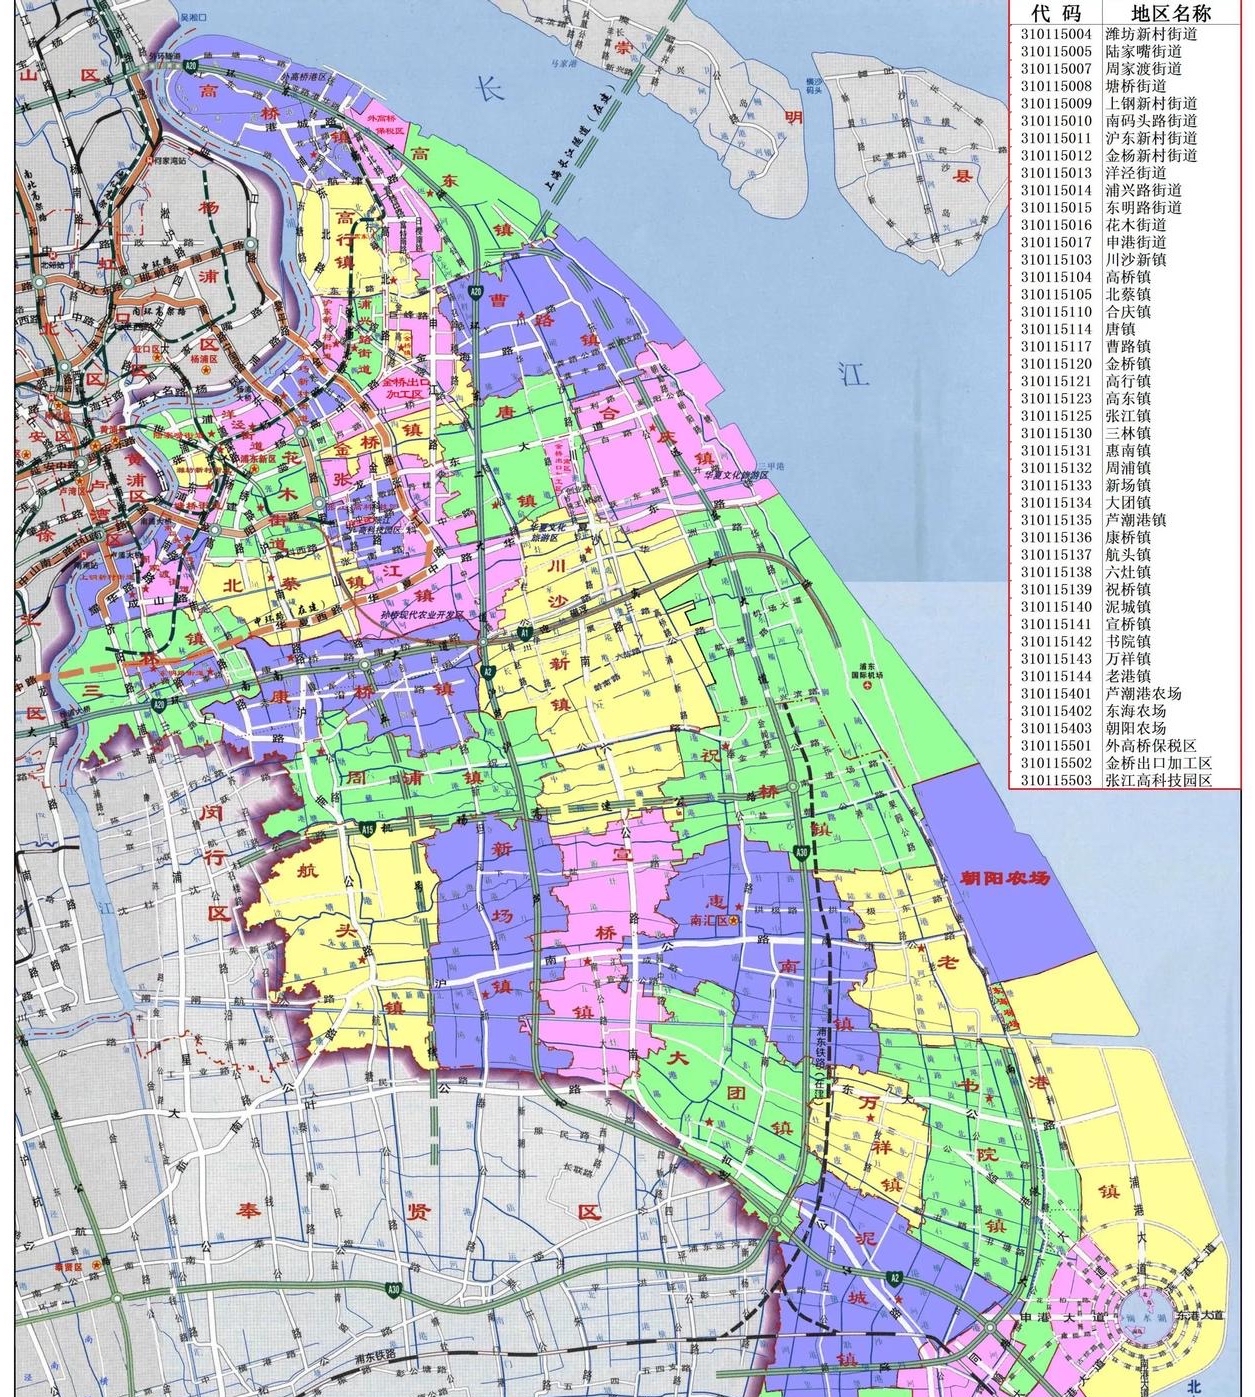 上海浦东新区与香港数据对比,面积并不代表一切!